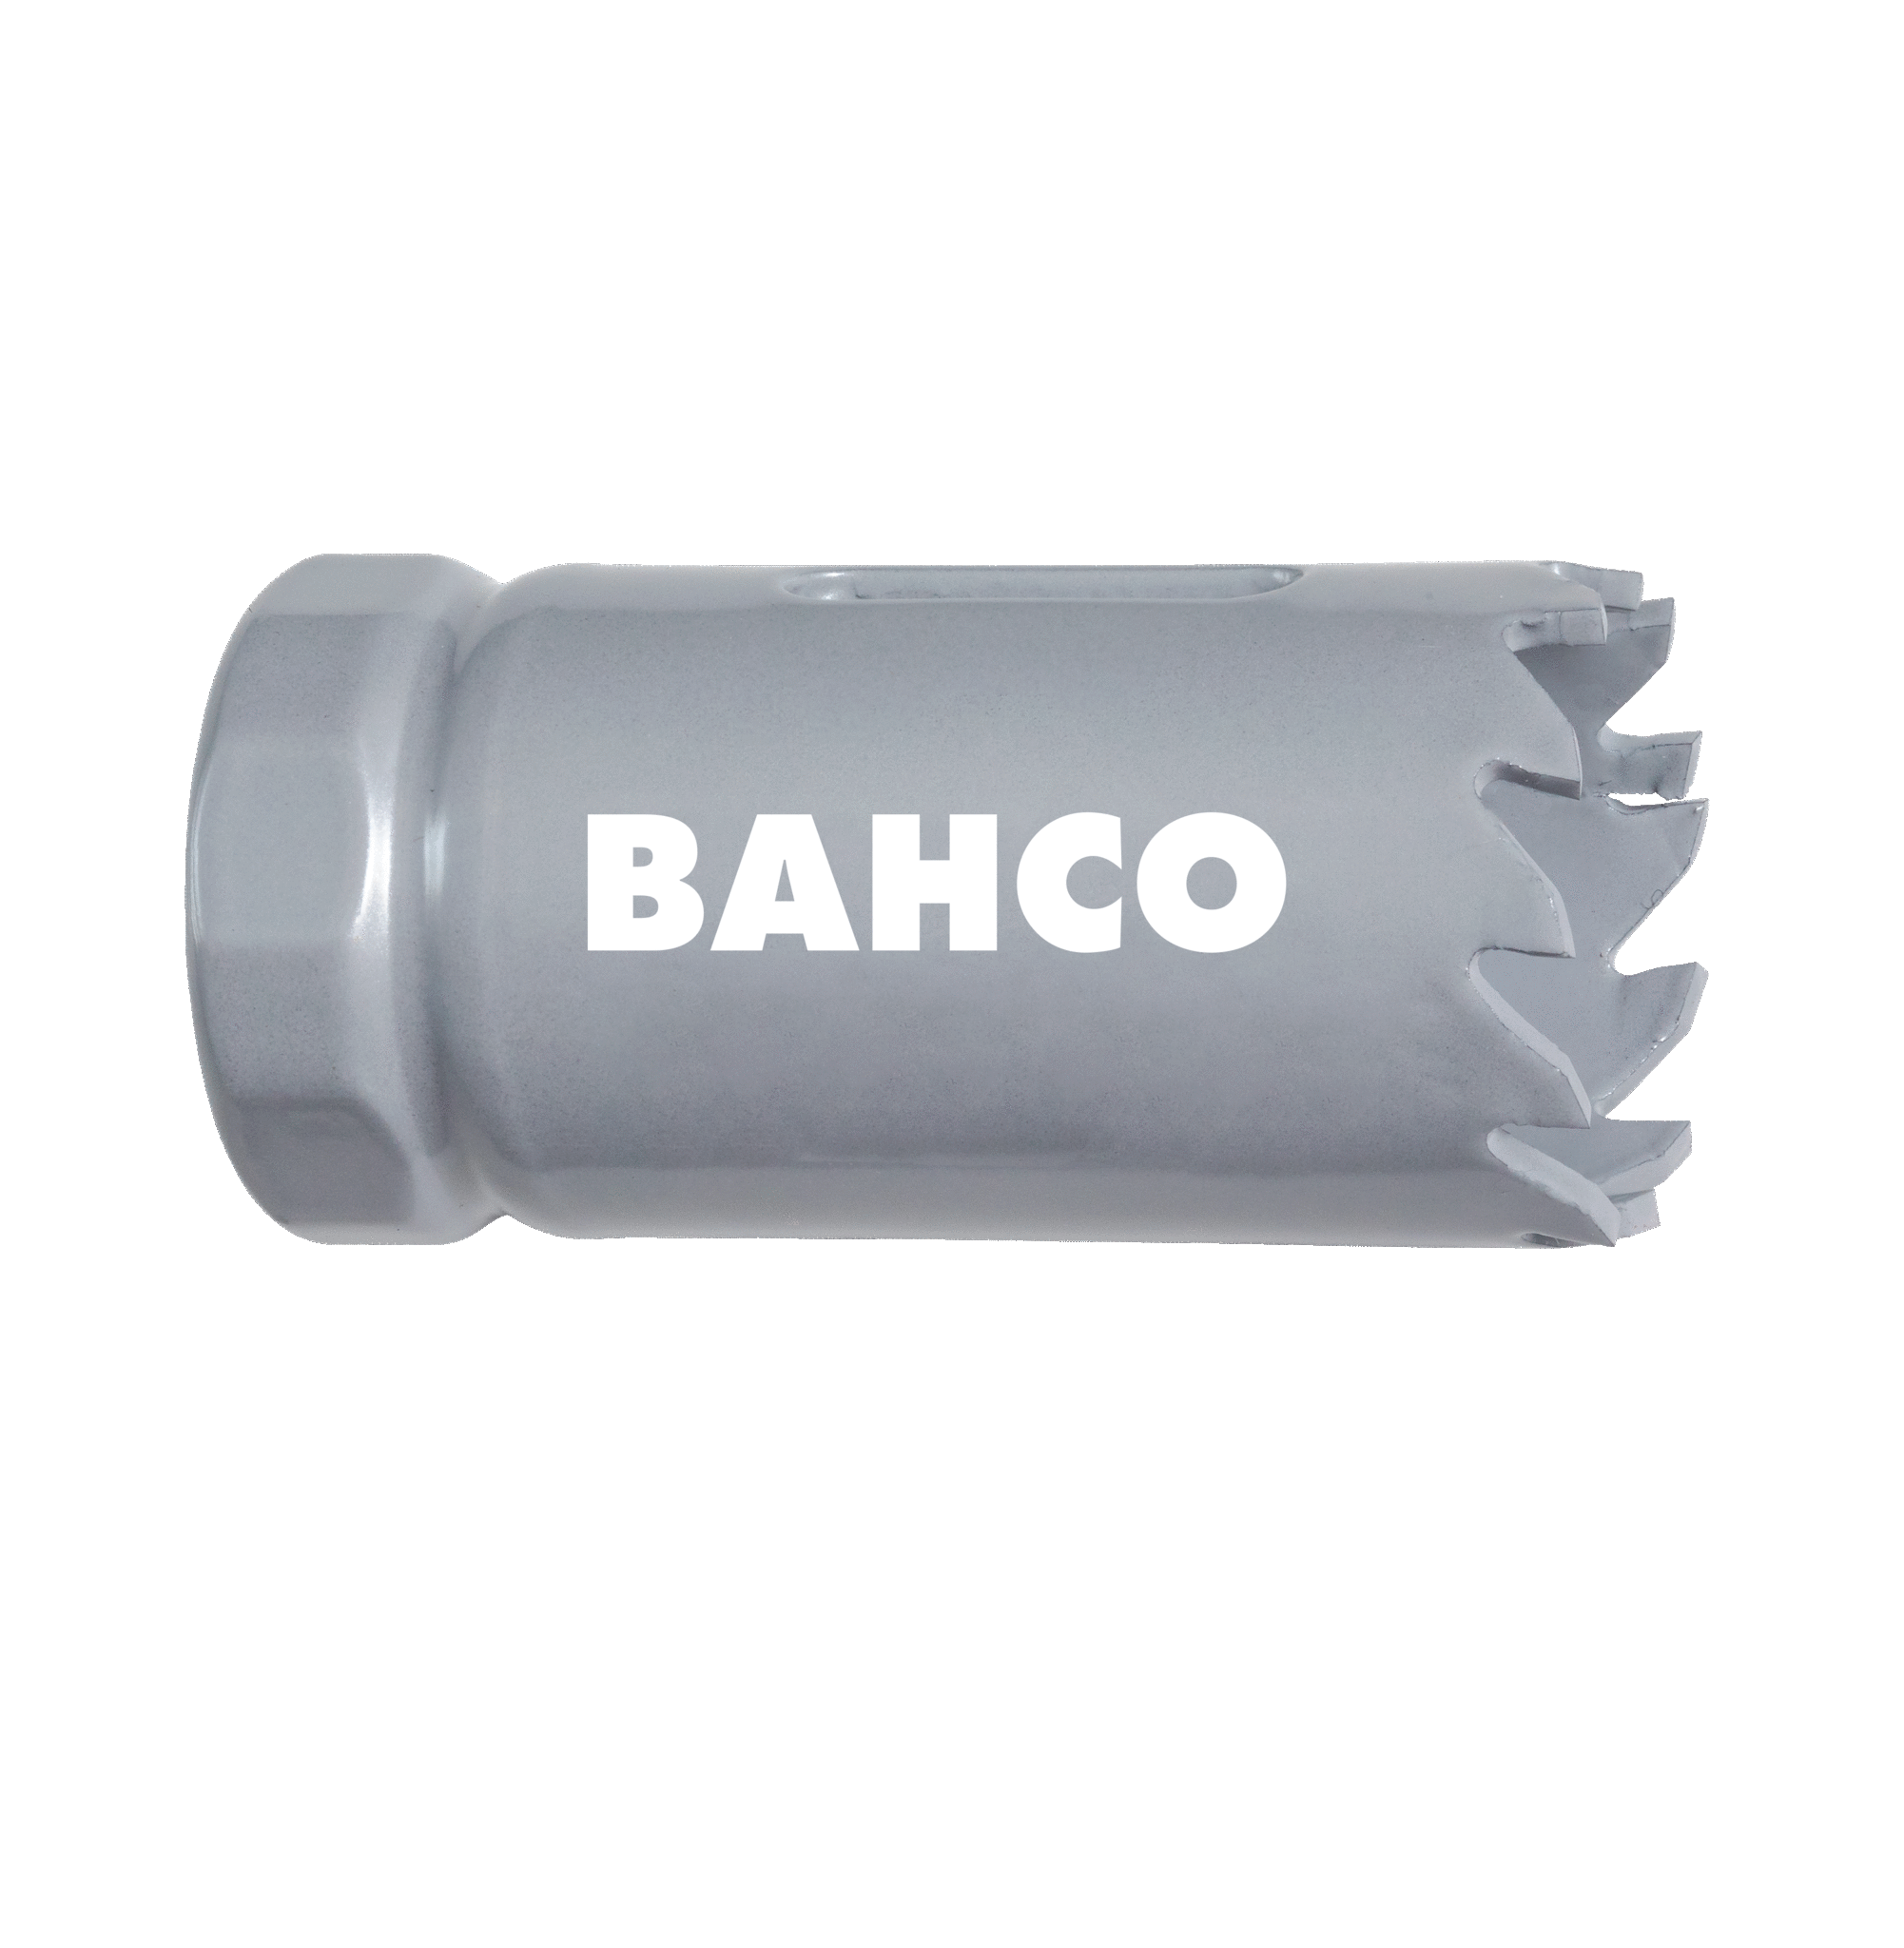 Кольцевые пилы с твердосплавными напайками BAHCO 3832-70